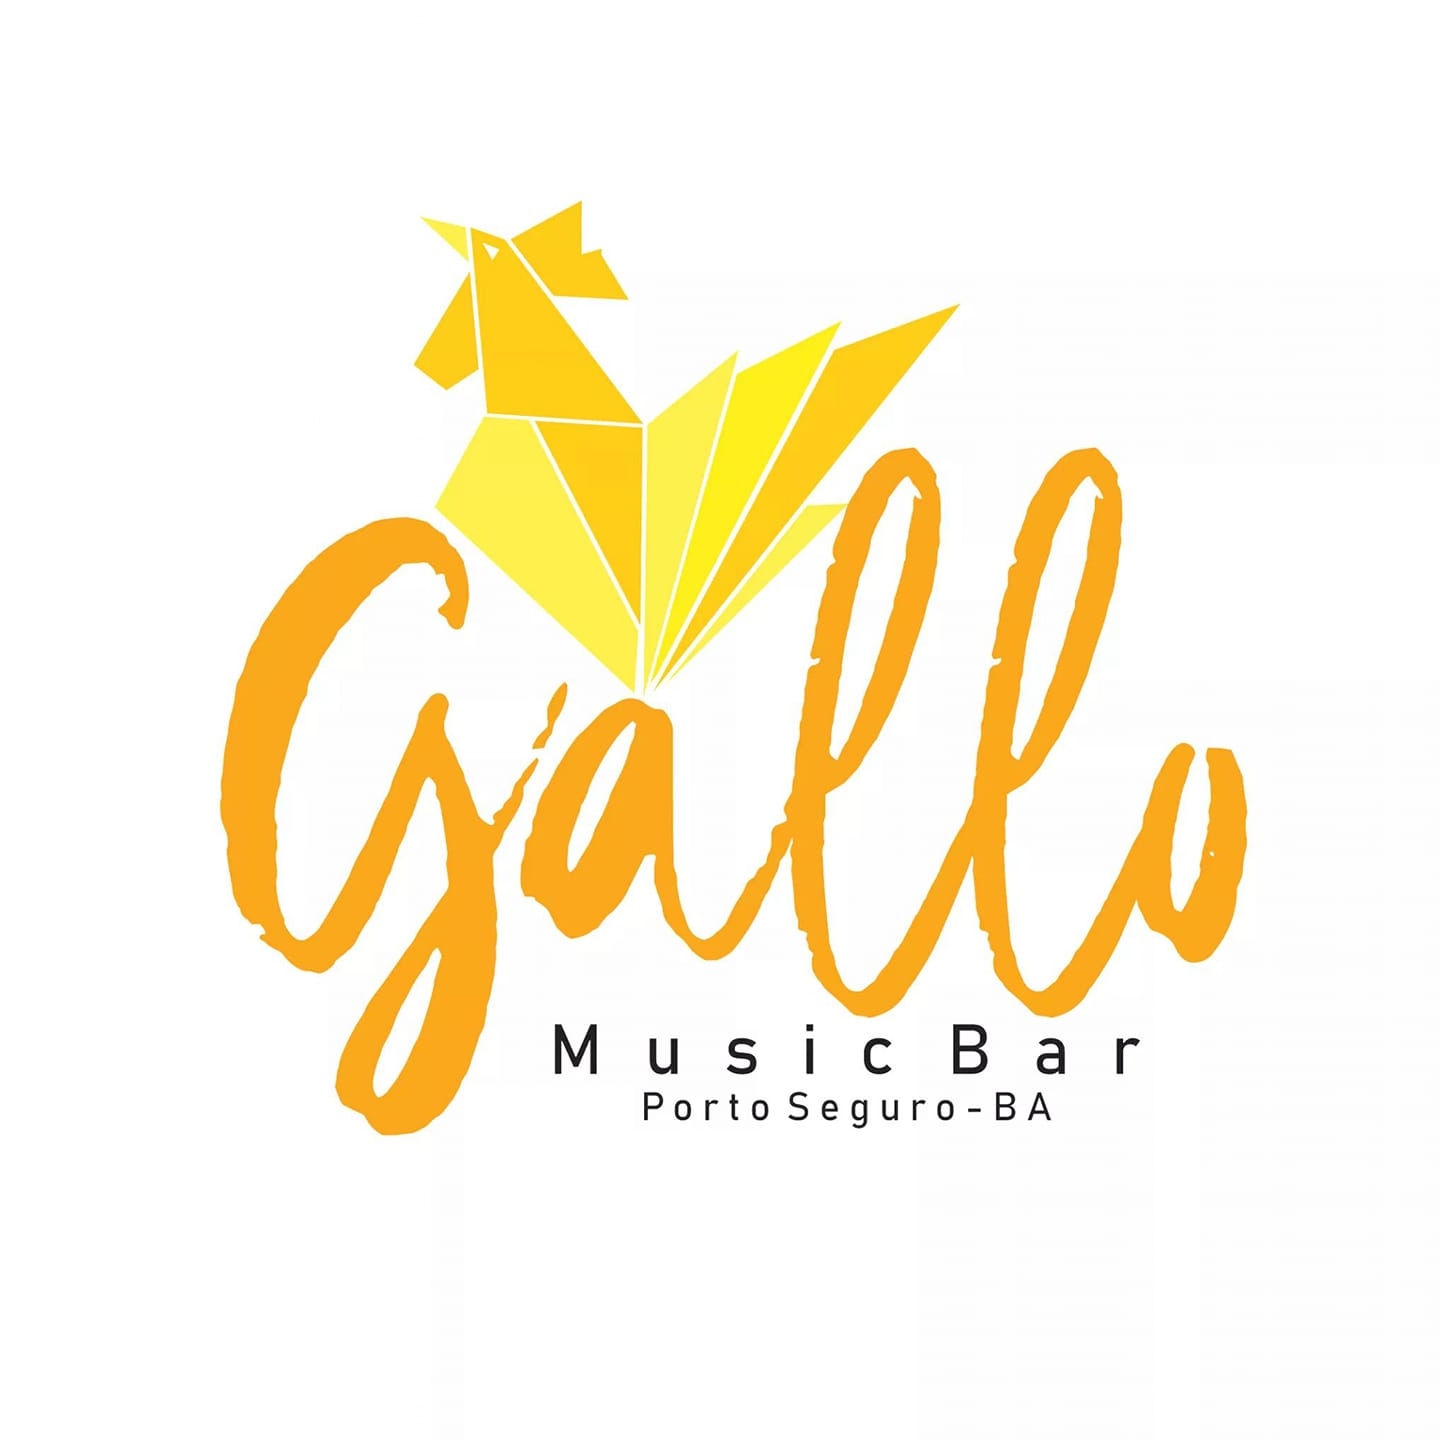 Cartaz  - Gallo Music Bar - Rua 2 de julho, 20B - Casa da Lenha, Quinta-feira 14 de Novembro de 2019